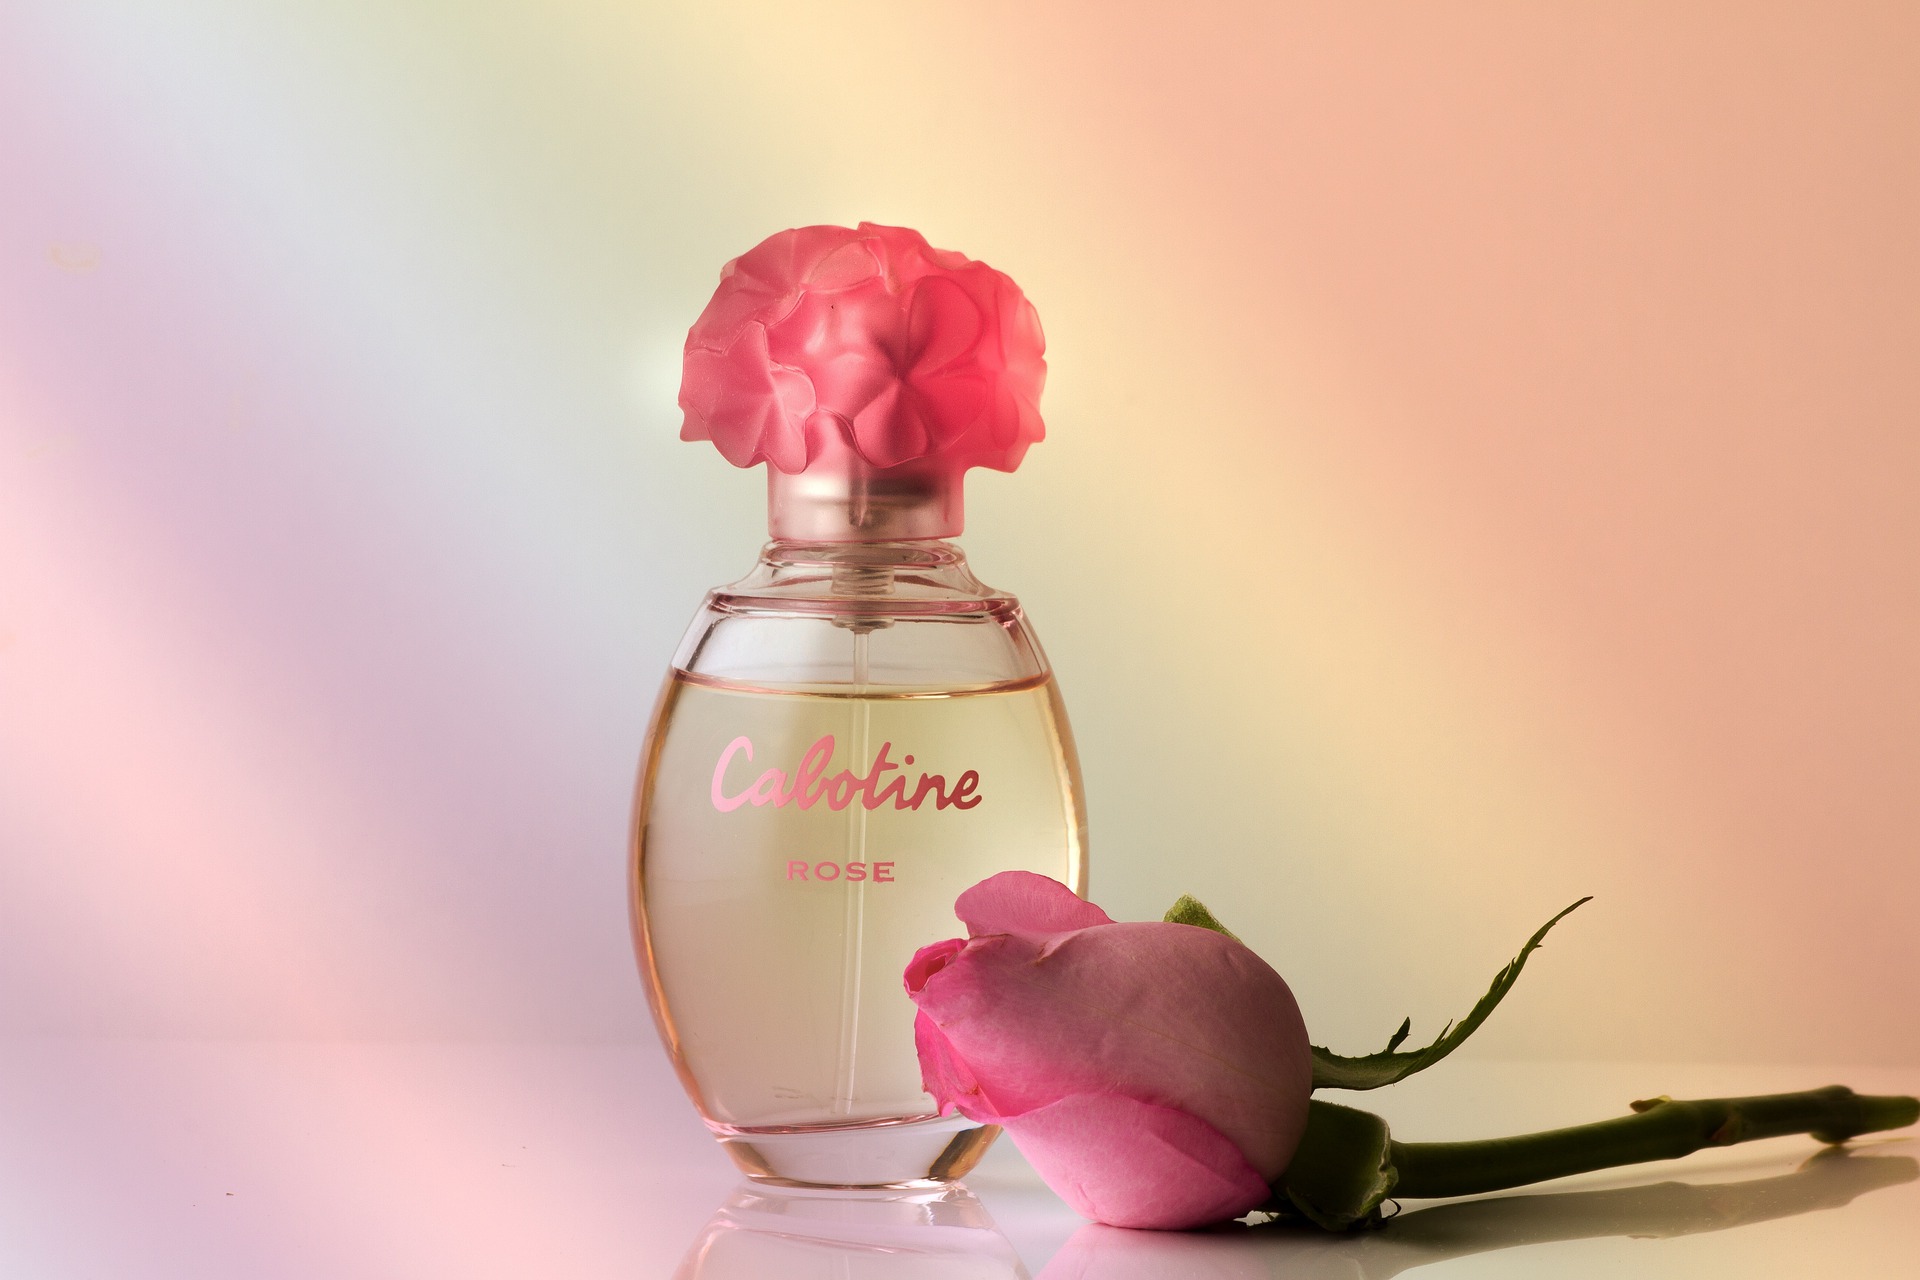 Perfumeria internetowa - szybkie i pewne zakupy